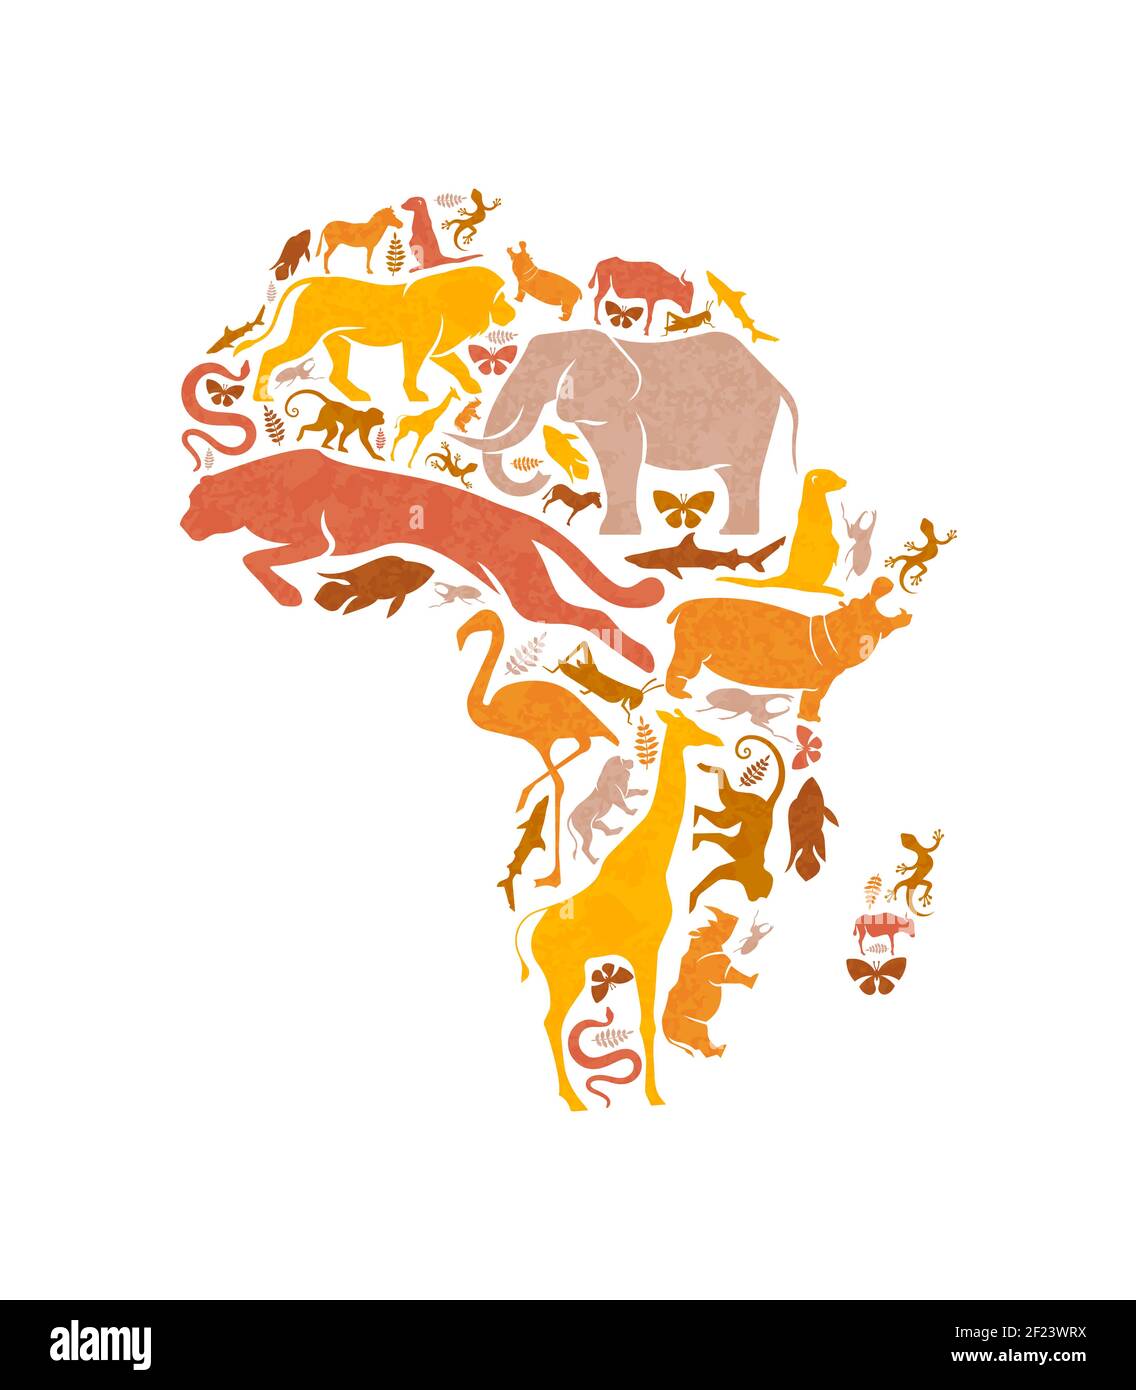 Diverse forme di animali africani che fanno sì che la mappa del continente africano si formi su uno sfondo bianco isolato. Illustrazione della silhouette degli animali da safari per una vita selvaggia Illustrazione Vettoriale